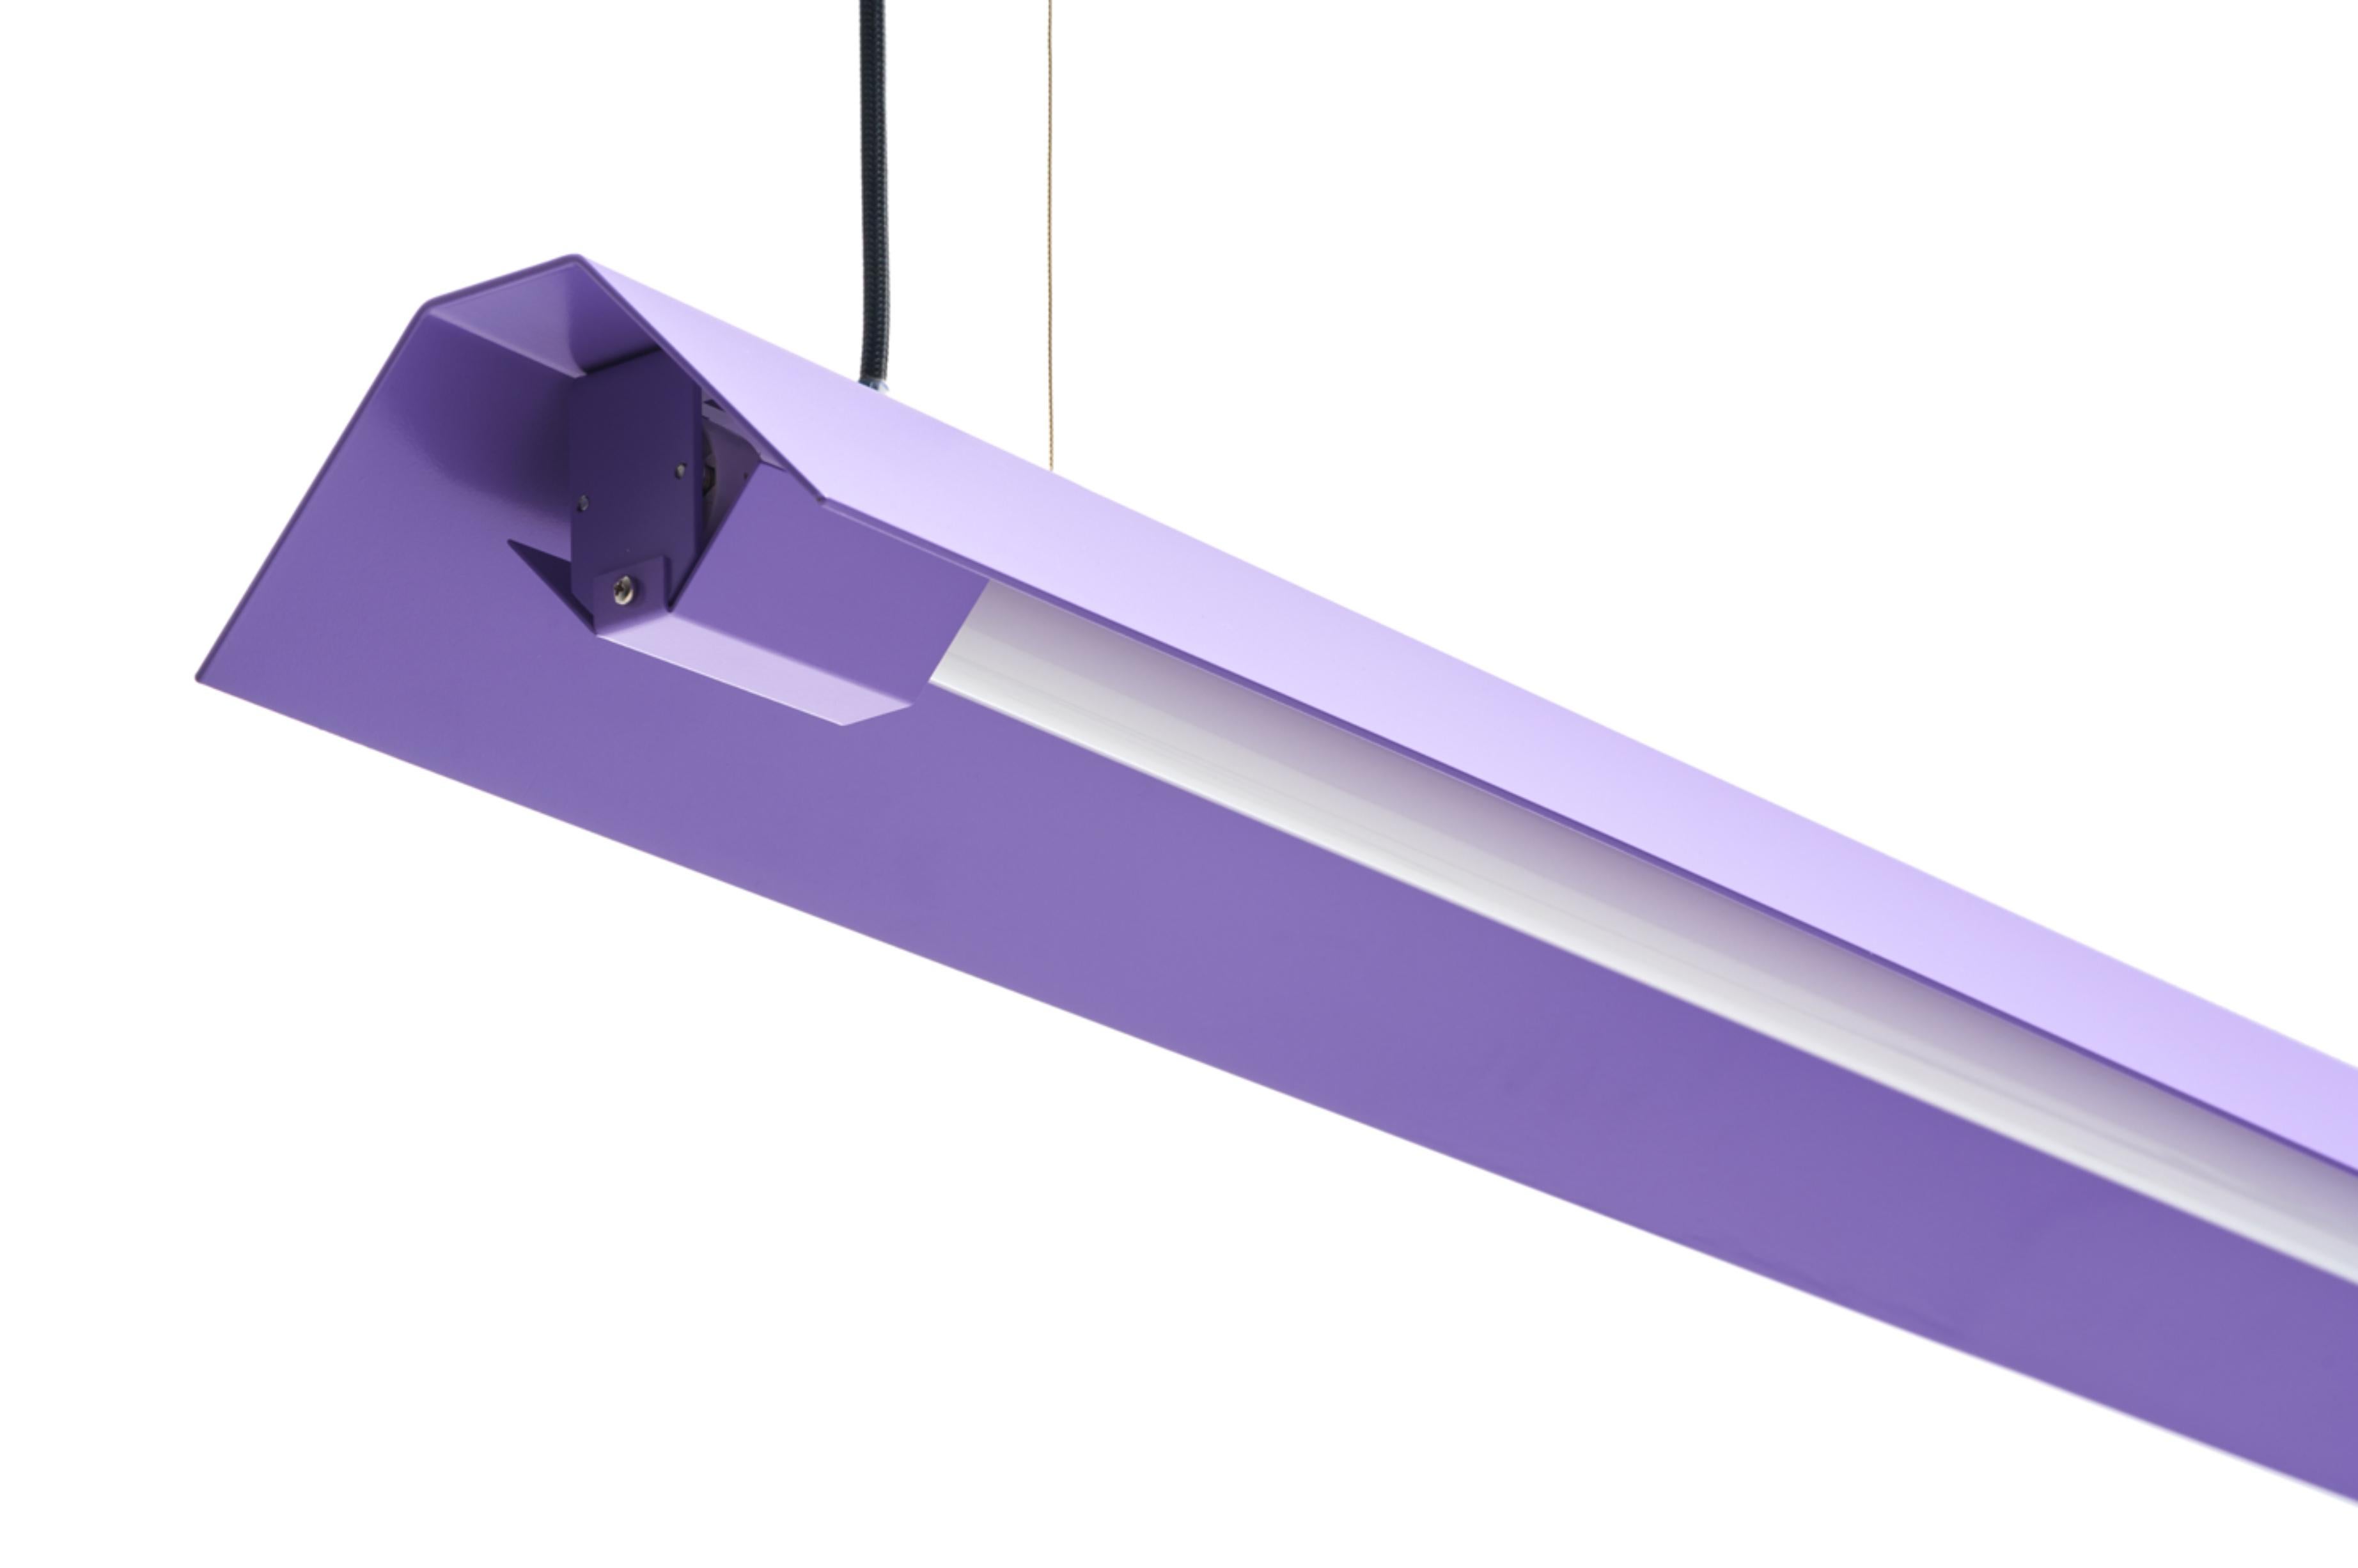 Hängeleuchte „Lavendel“ von Lexavala, Misalliance
Abmessungen: D 16 x B 100 x H 8 cm
MATERIAL: pulverbeschichtetes Aluminium.

Es gibt zwei lange Sockelabdeckungen, die sich über die LED erstrecken. Zwei kurze sind in den Modellen 